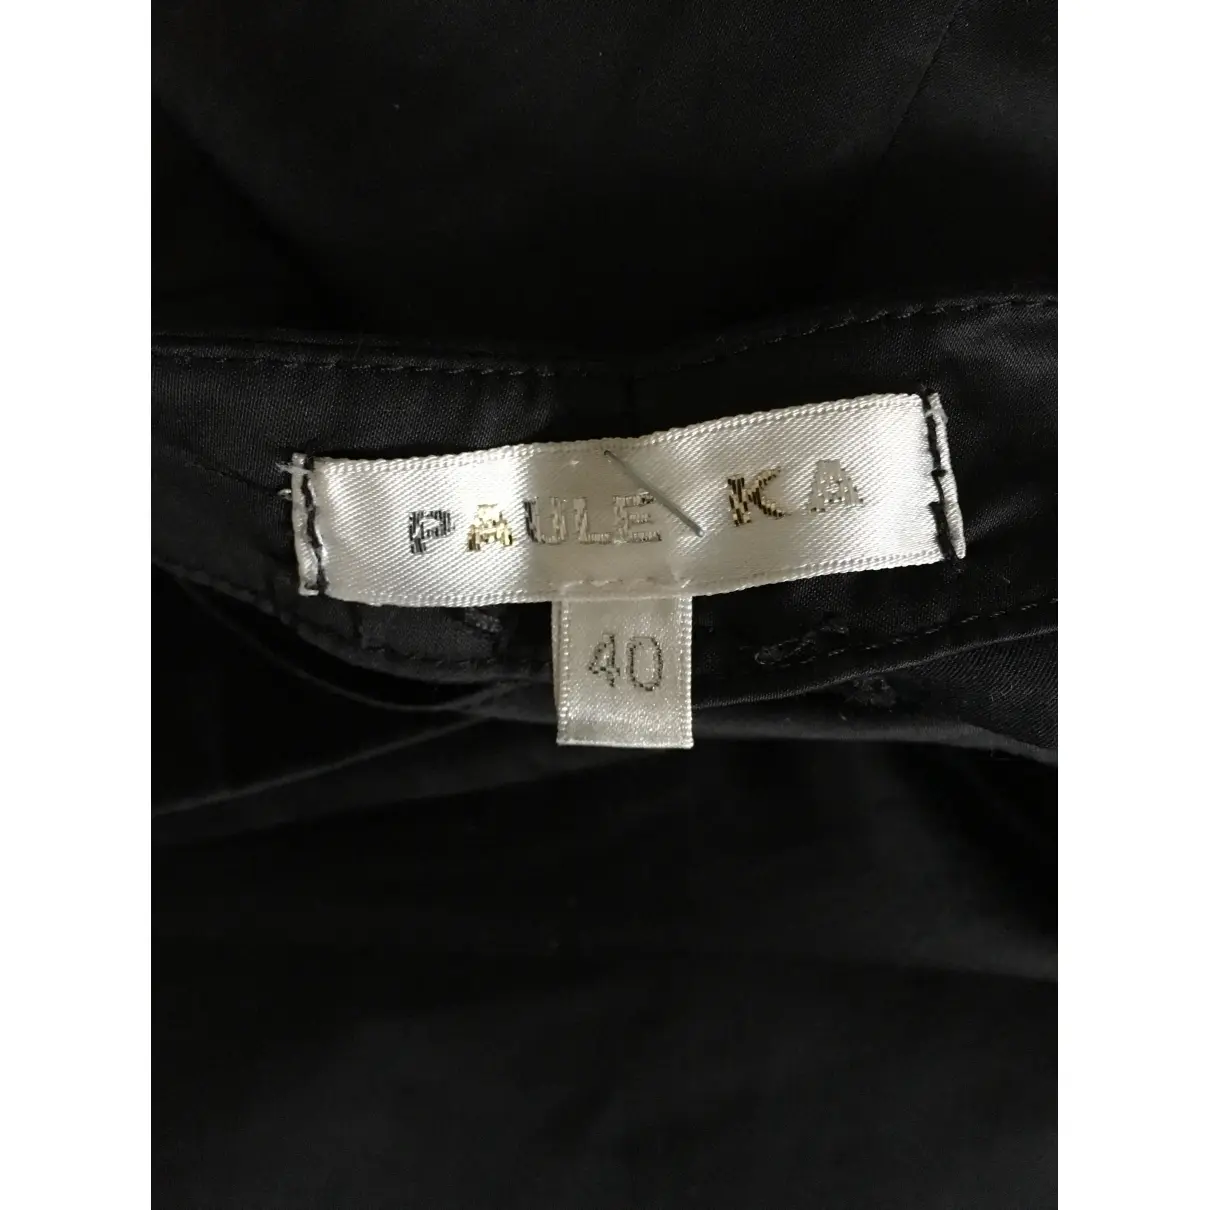 Buy Paule Ka Trousers online